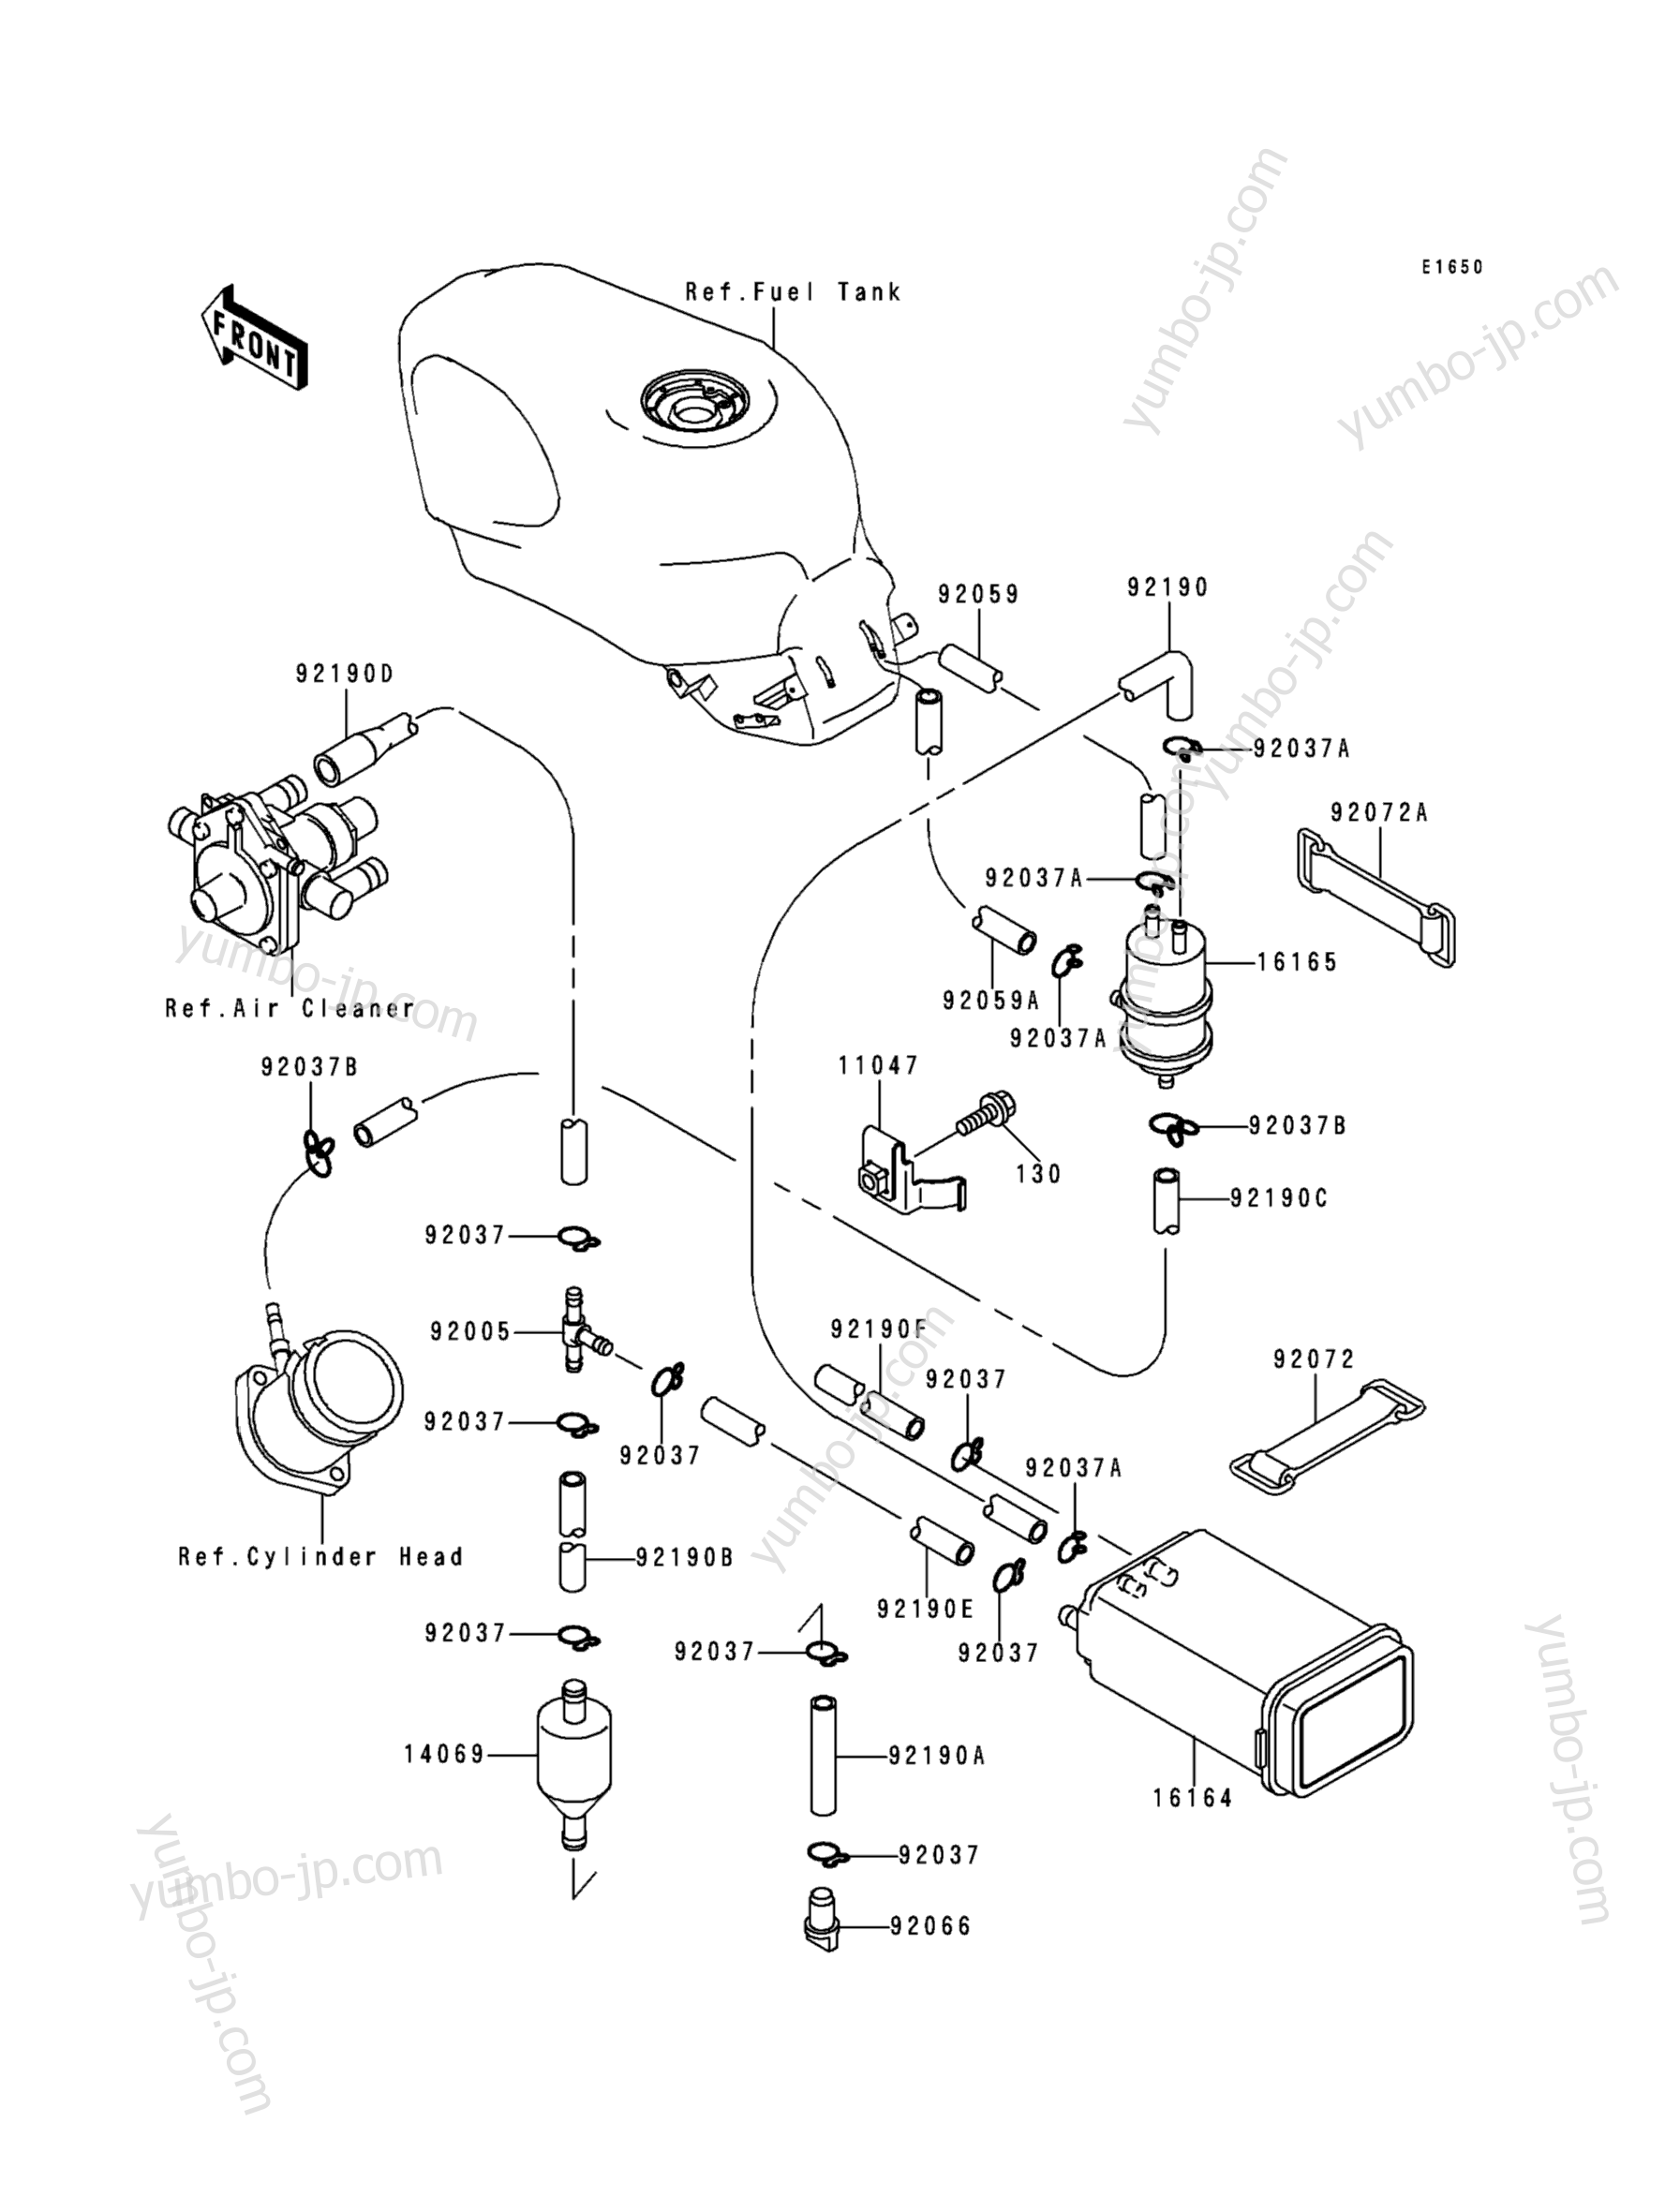 FUEL EVAPORATIVE SYSTEM for motorcycles KAWASAKI NINJA ZX-6 (ZX600-E5) 1997 year